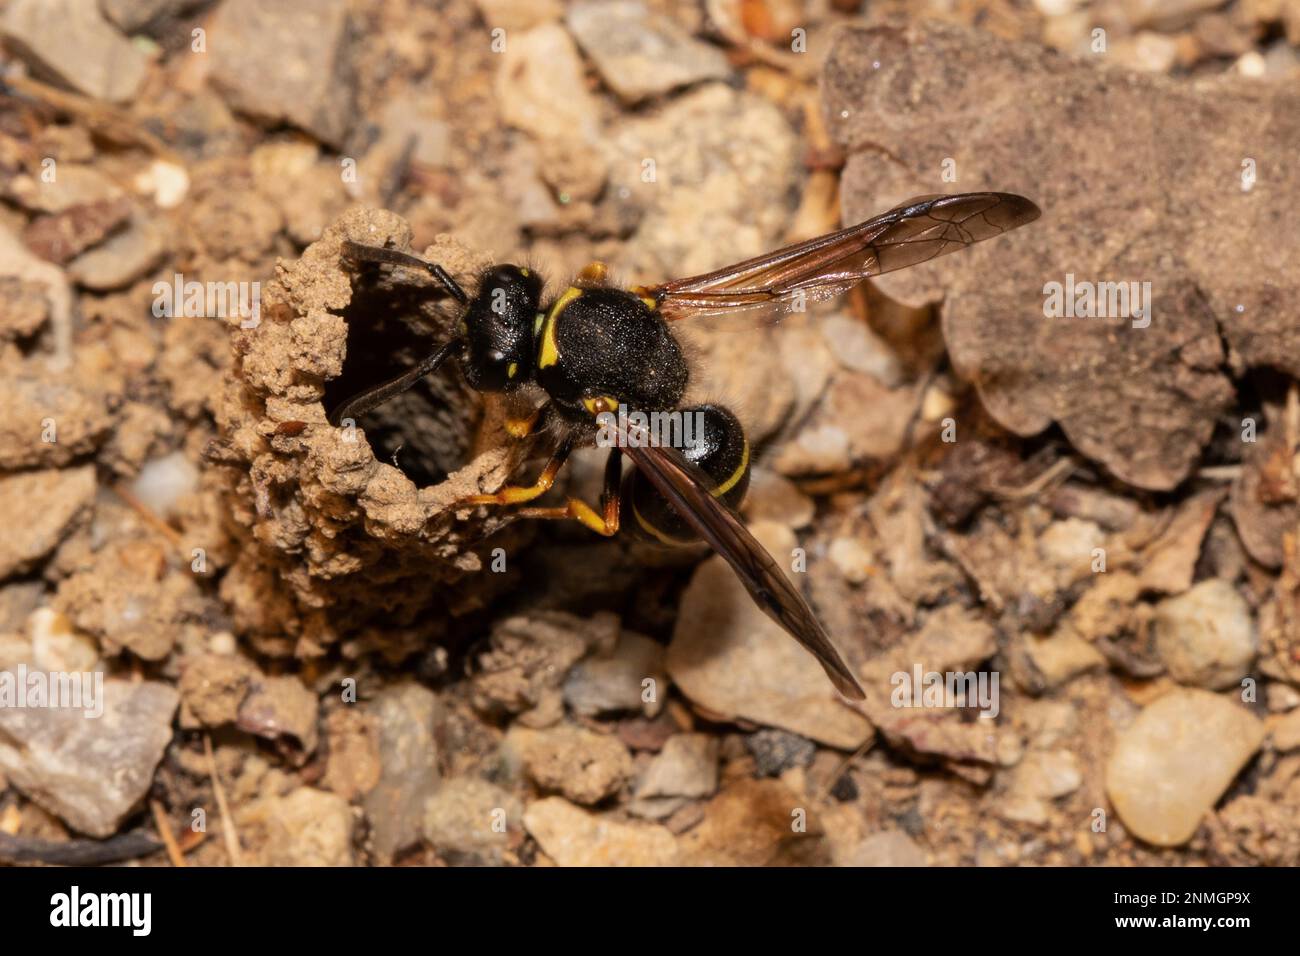 Mason vespe nido immagini e fotografie stock ad alta risoluzione - Alamy